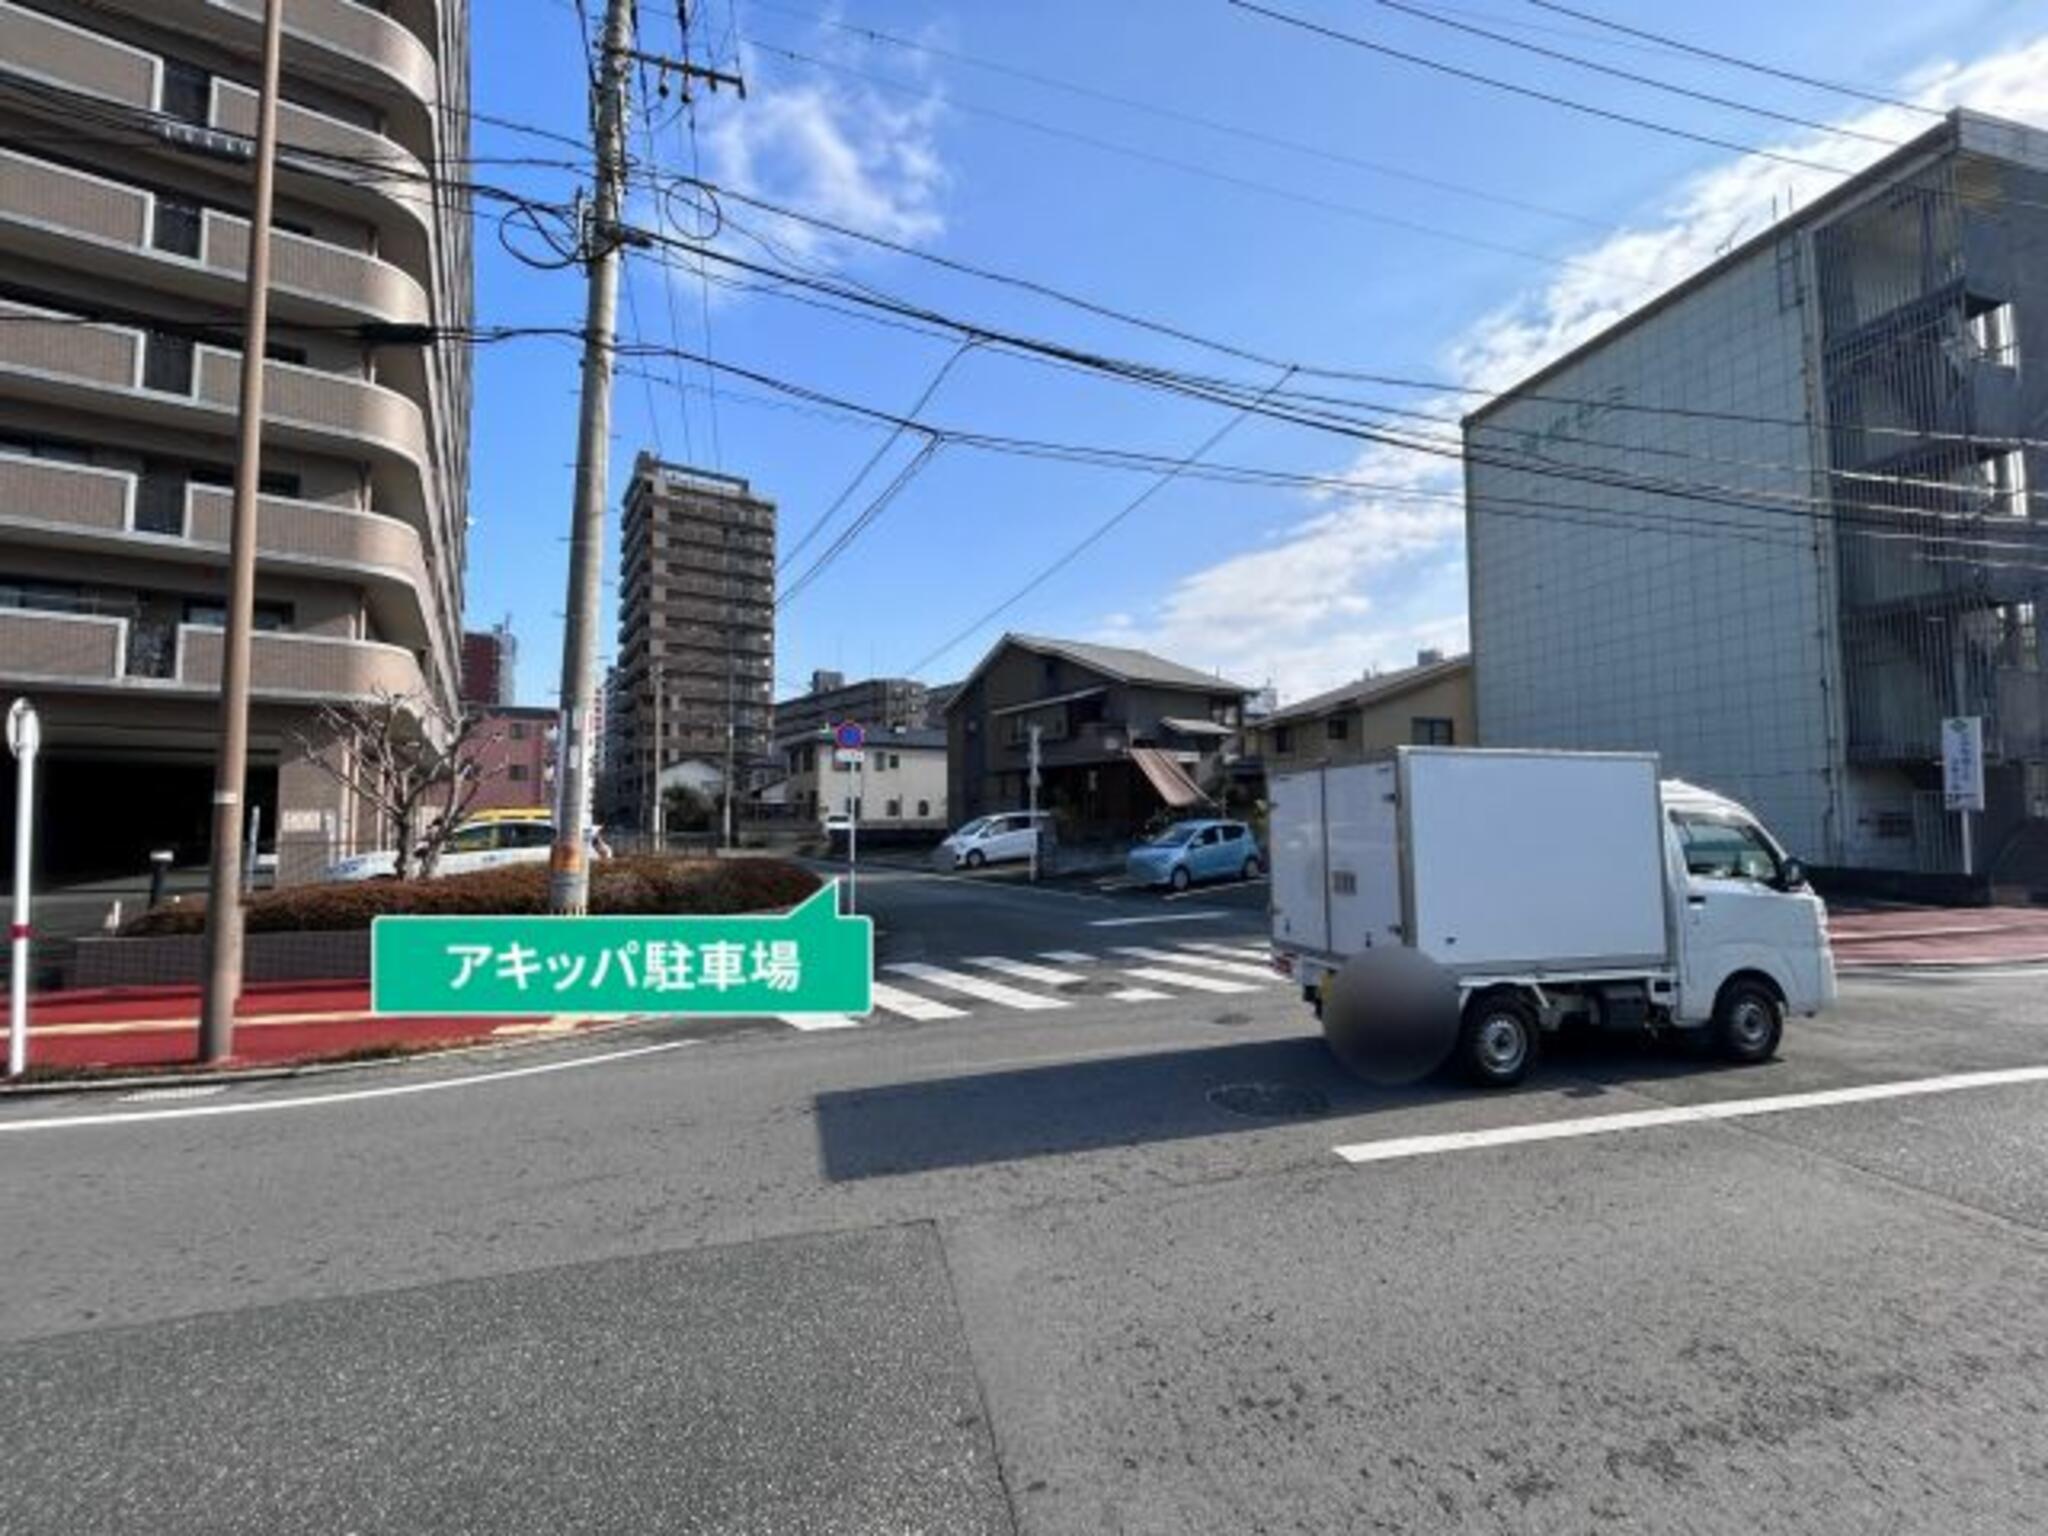 akippa駐車場:熊本県熊本市中央区新大江1丁目19-2の代表写真5